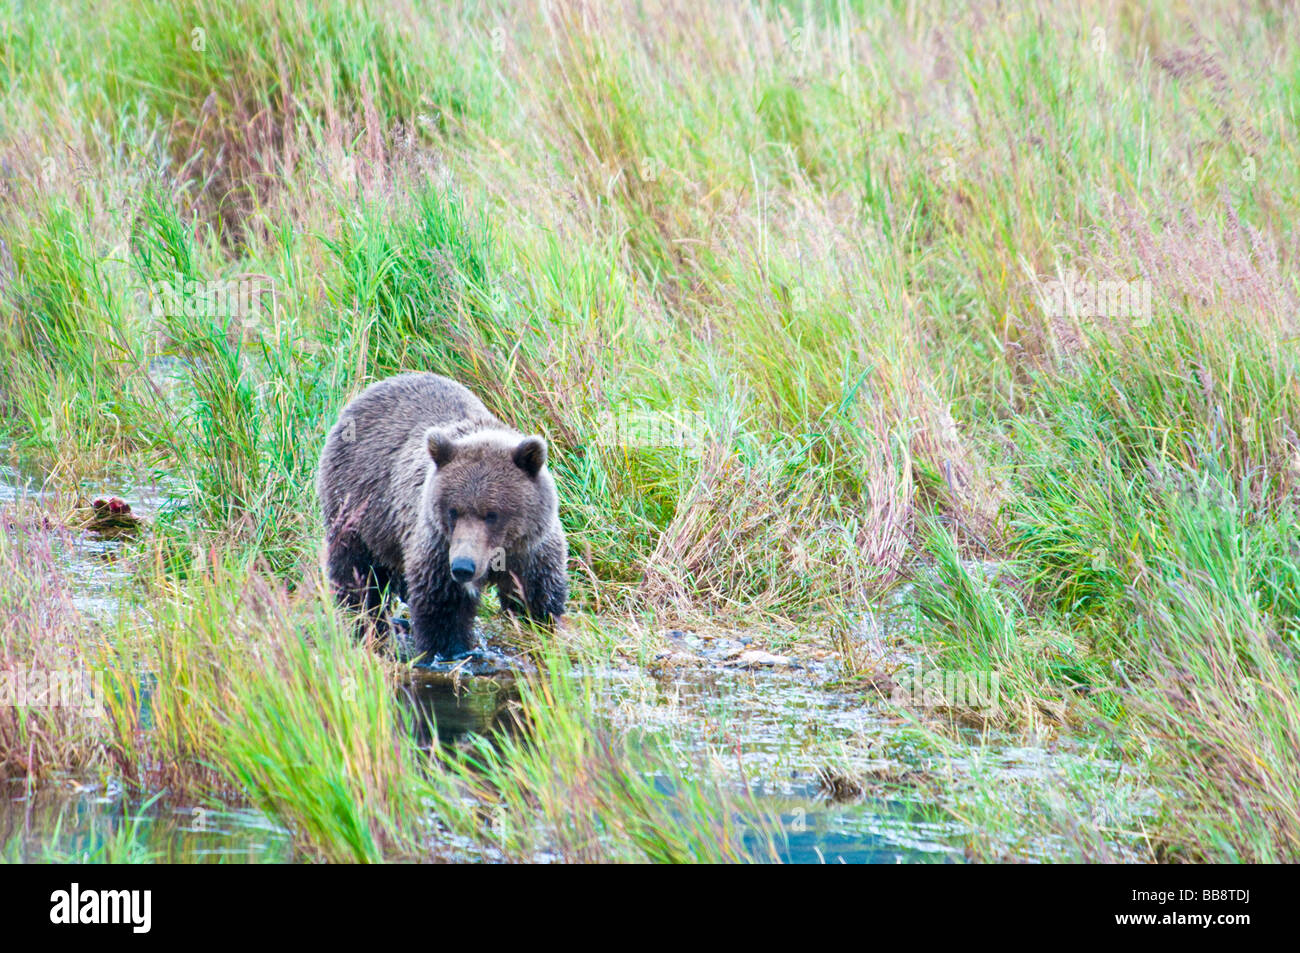 Grizzly Bear, Ursus arctos horriblis, Brooks River, Katmai National Park, Alaska, USA Stock Photo